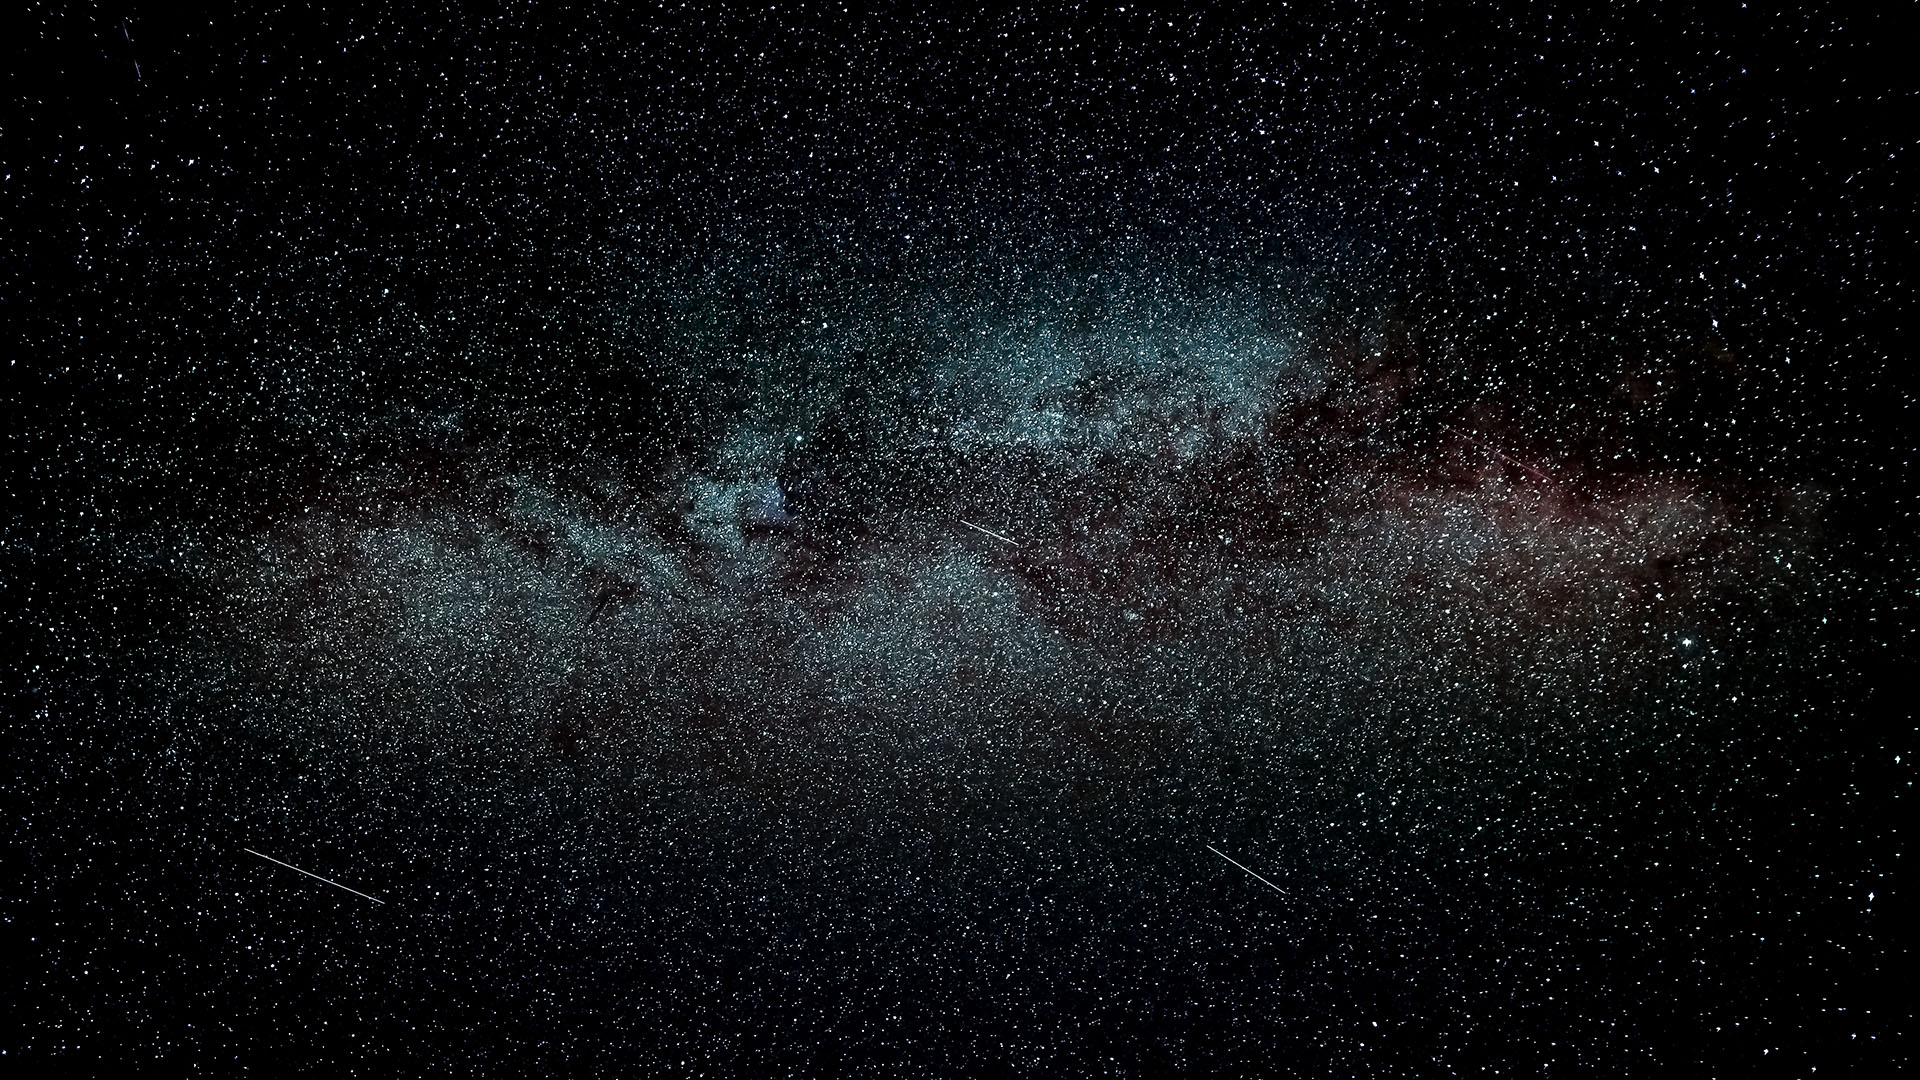 El halo estelar de la Vía Láctea es la parte visible de lo que se conoce más ampliamente como el halo galáctico